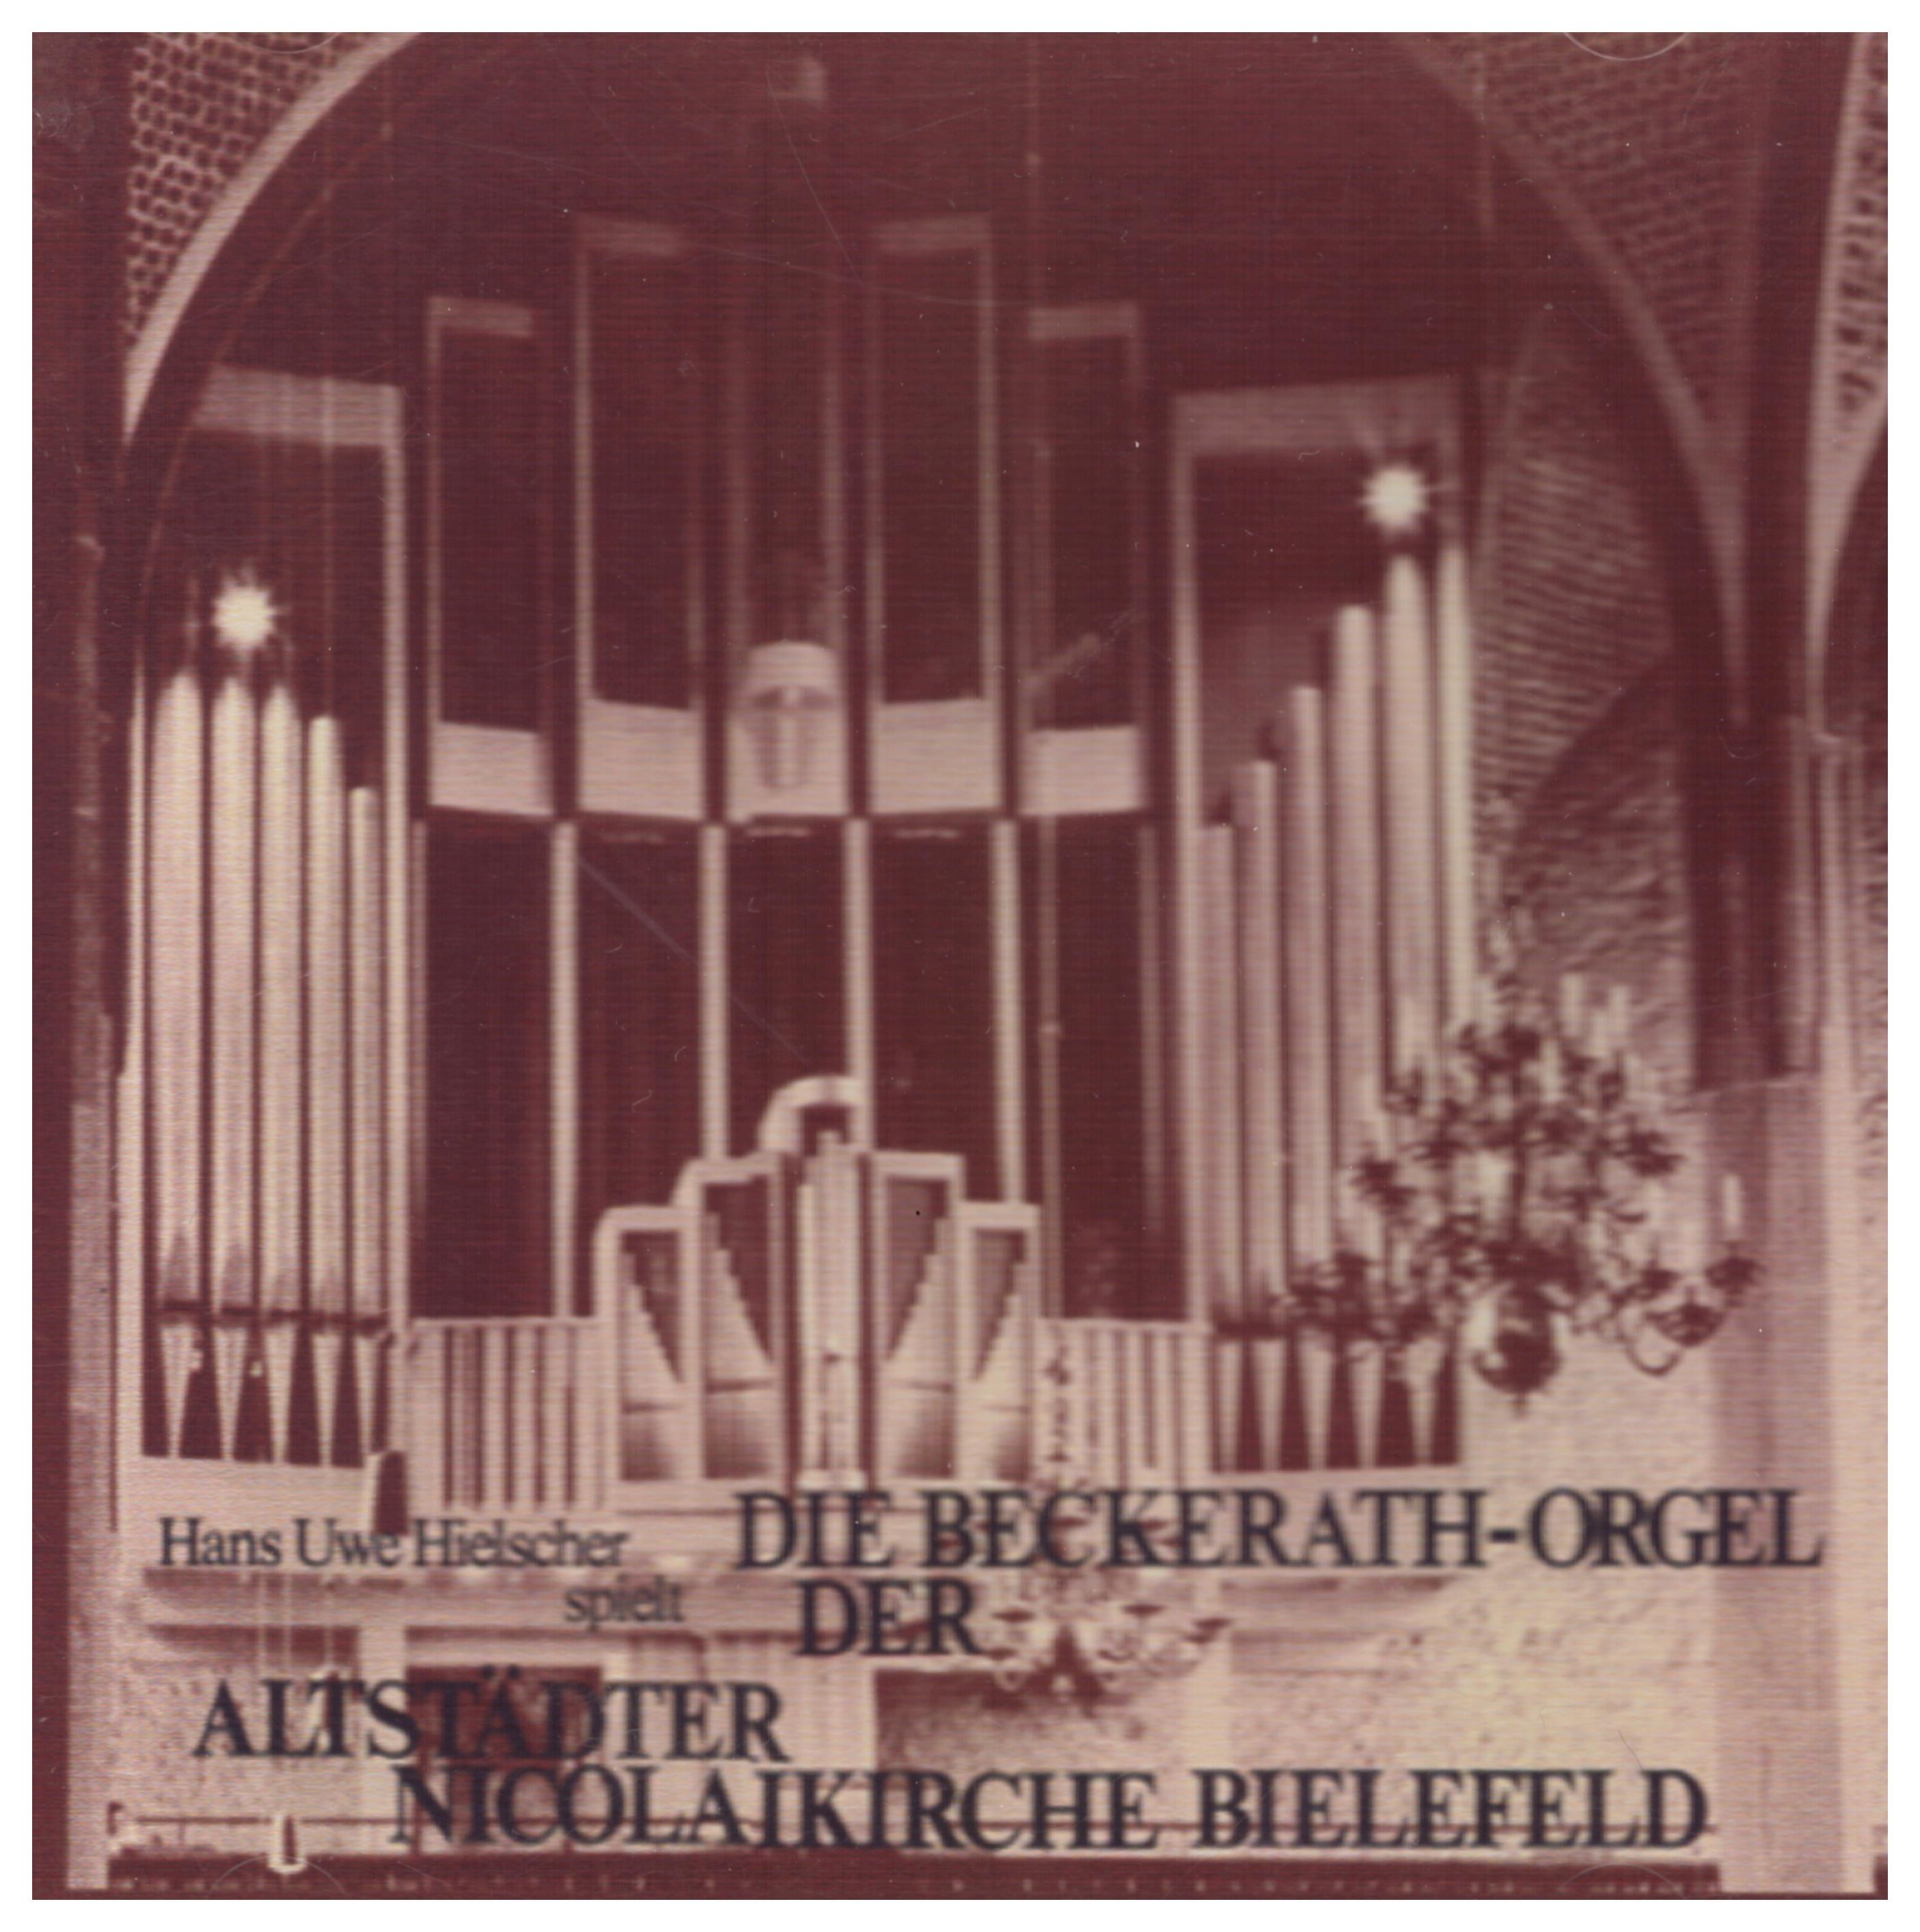 Die Beckerath-Orgel der Altstädter Nicolaikirche Bielefeld